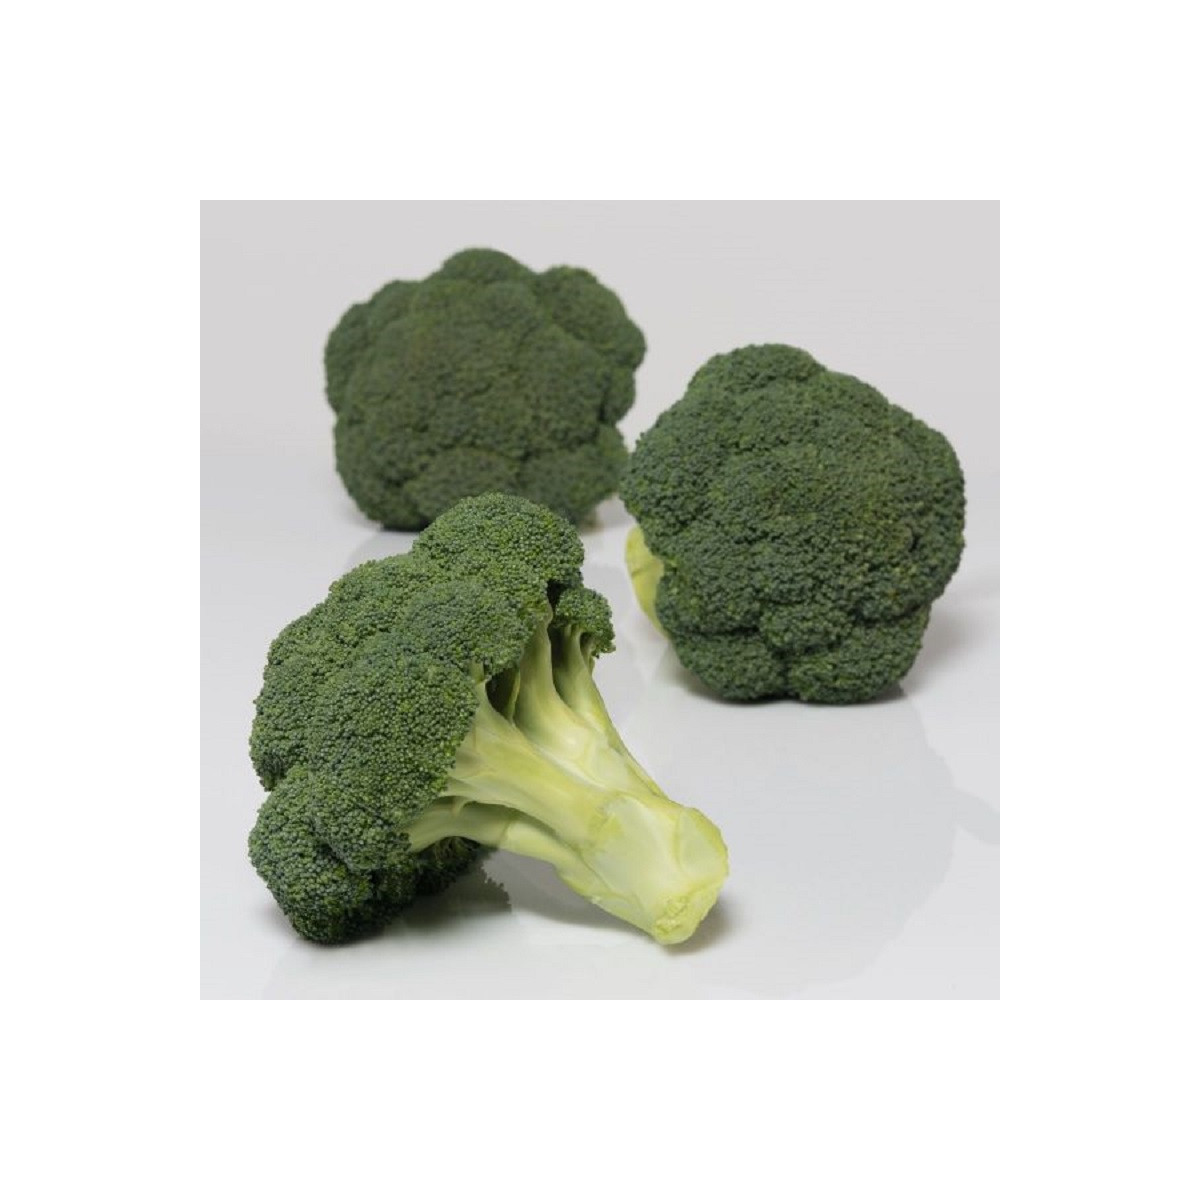 BIO Brokolice Covina F1 - Brassica oleracea L. - bio semena brokolice - 20 ks